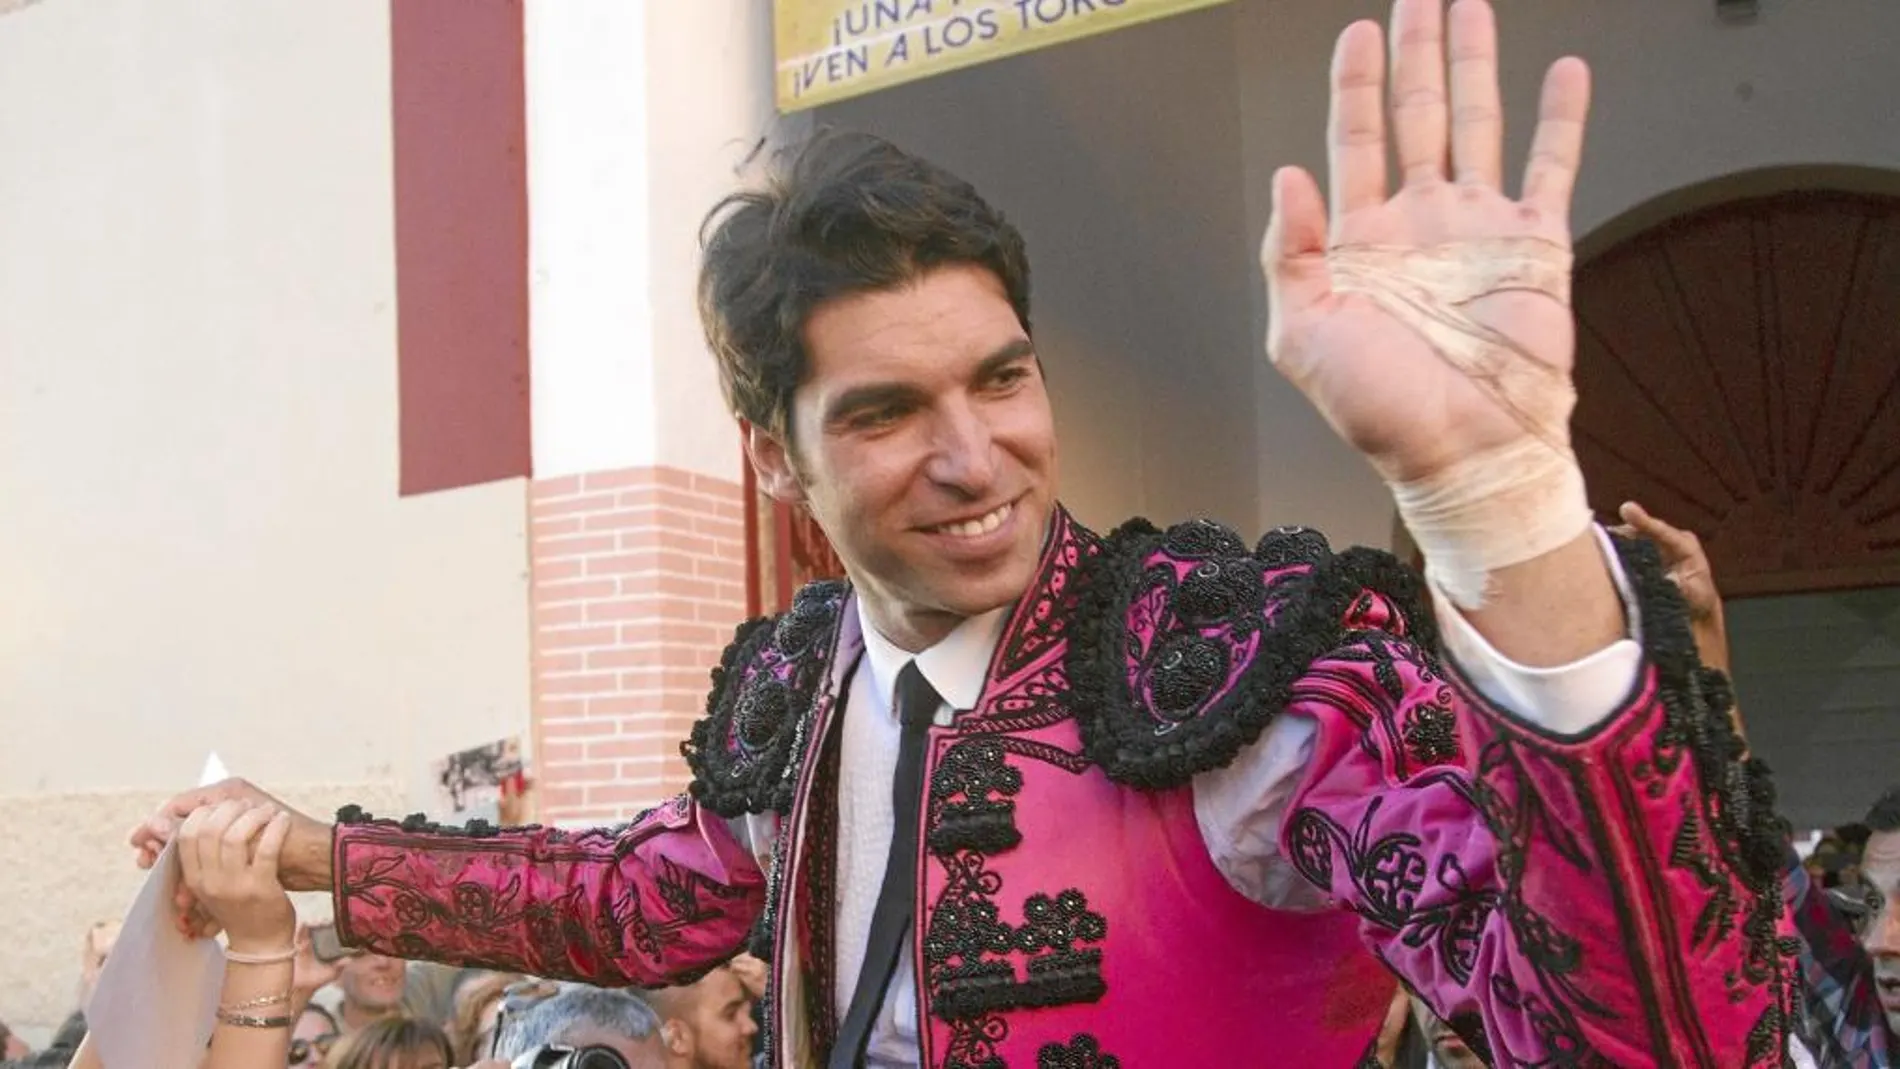 Cayetano Rivera brindó a Adrián un toro en Zaragoza y lanzó un mensaje a los antitaurinos